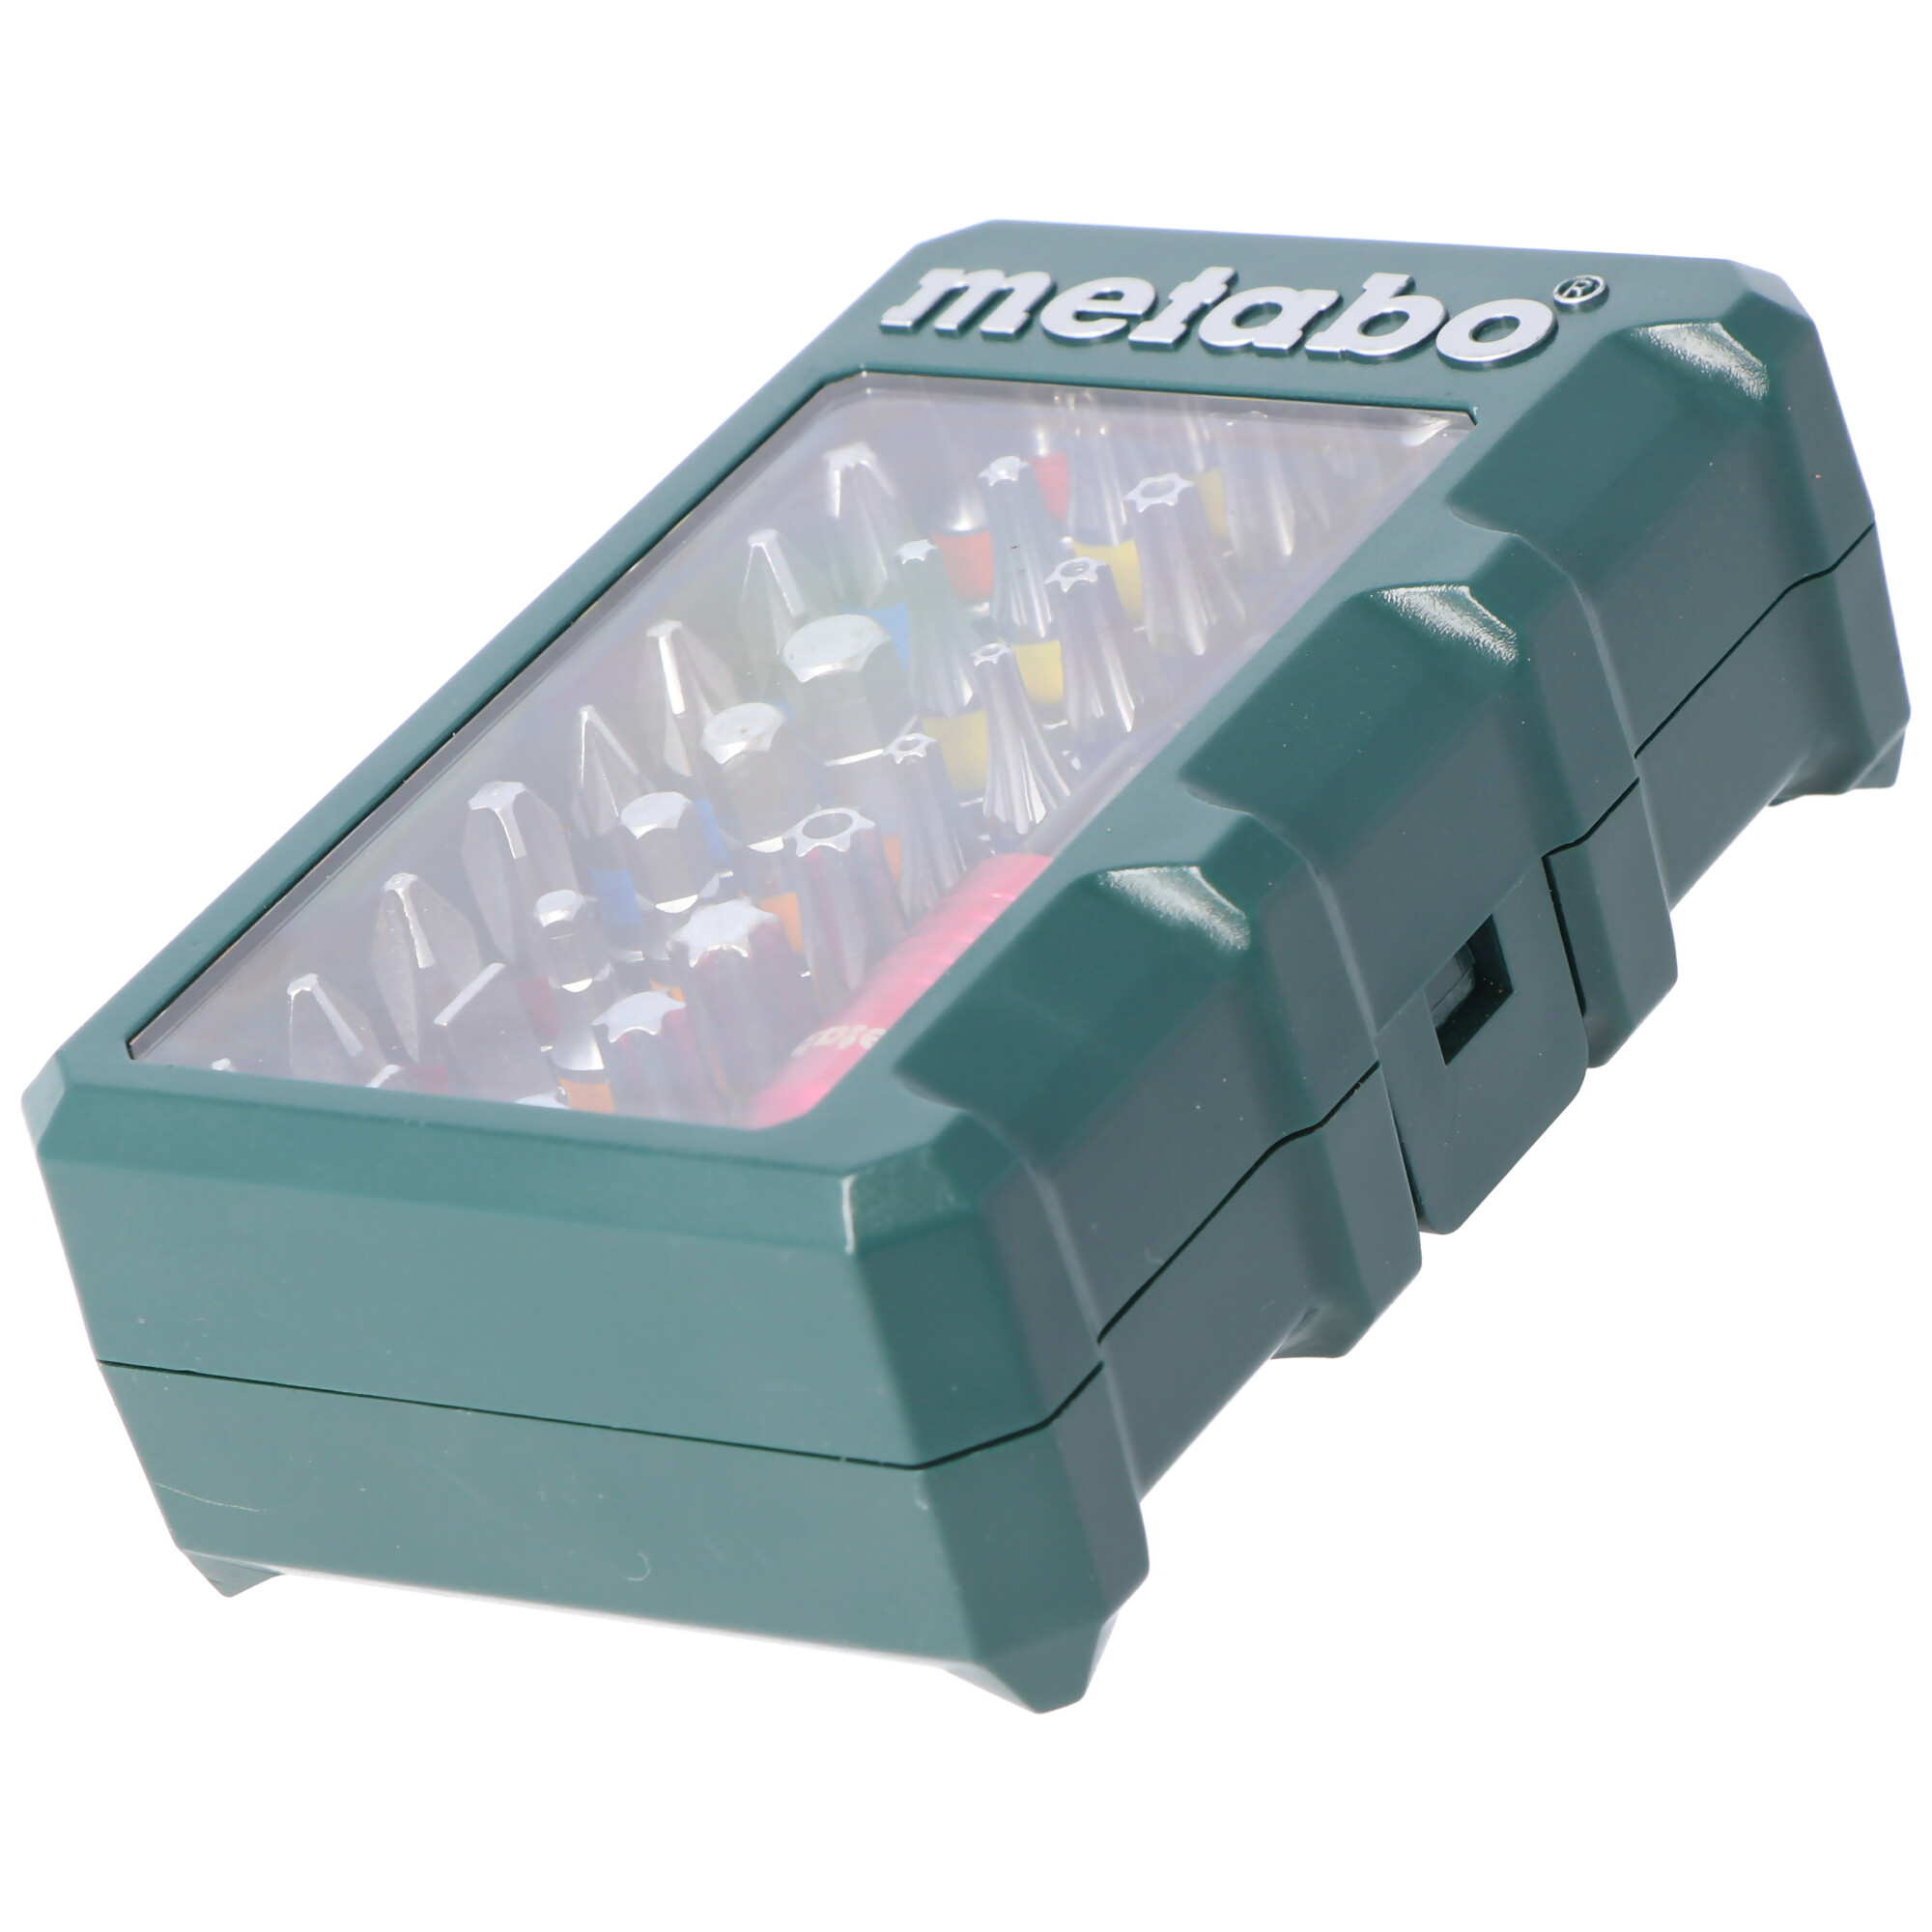 Original Metabo Bit-Box, Bit-Set "SP", 32-teilig 6.26700 inklusive magnetischer Schnellwechseladapter und Bithalter 65mm